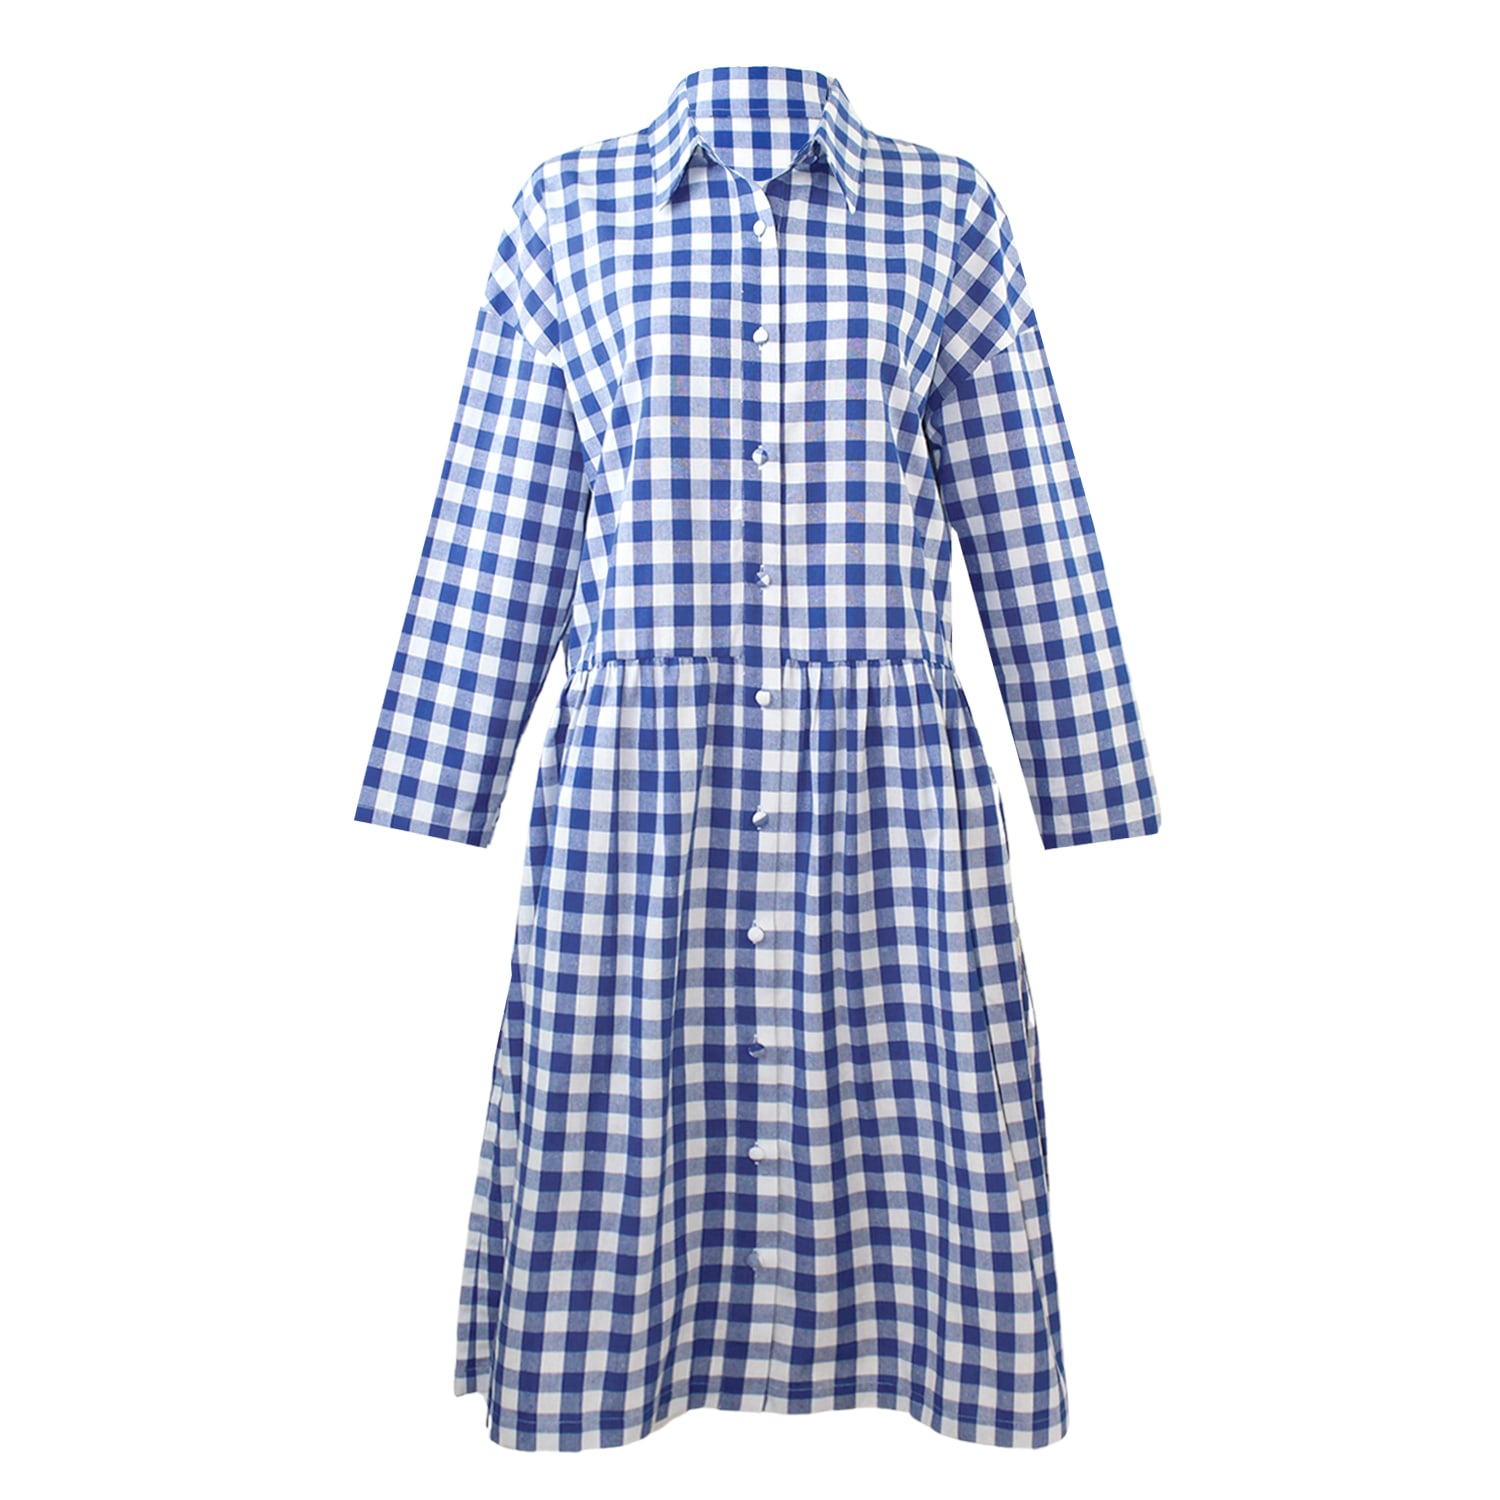 Women’s Blue / White Cotton Linen Gingham Shirt Dress Cobalt Blue S/M Zenzee